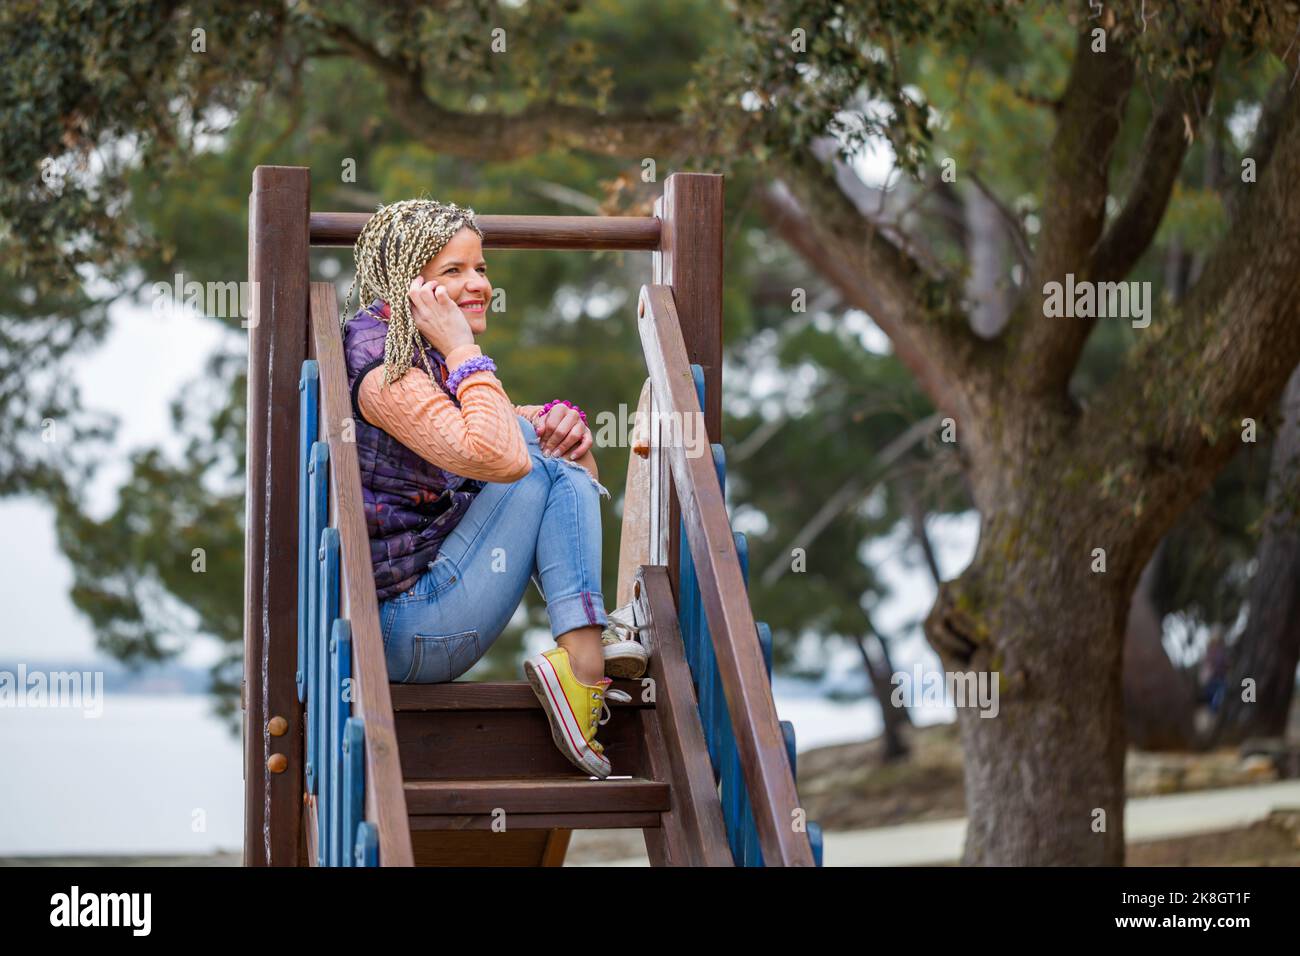 Attraktive reife Frau mit blonden Haaren und lässiger Kleidung, die in engem Raum auf der Rutsche auf dem Spielplatz mit dem Telefon sitzt Stockfoto